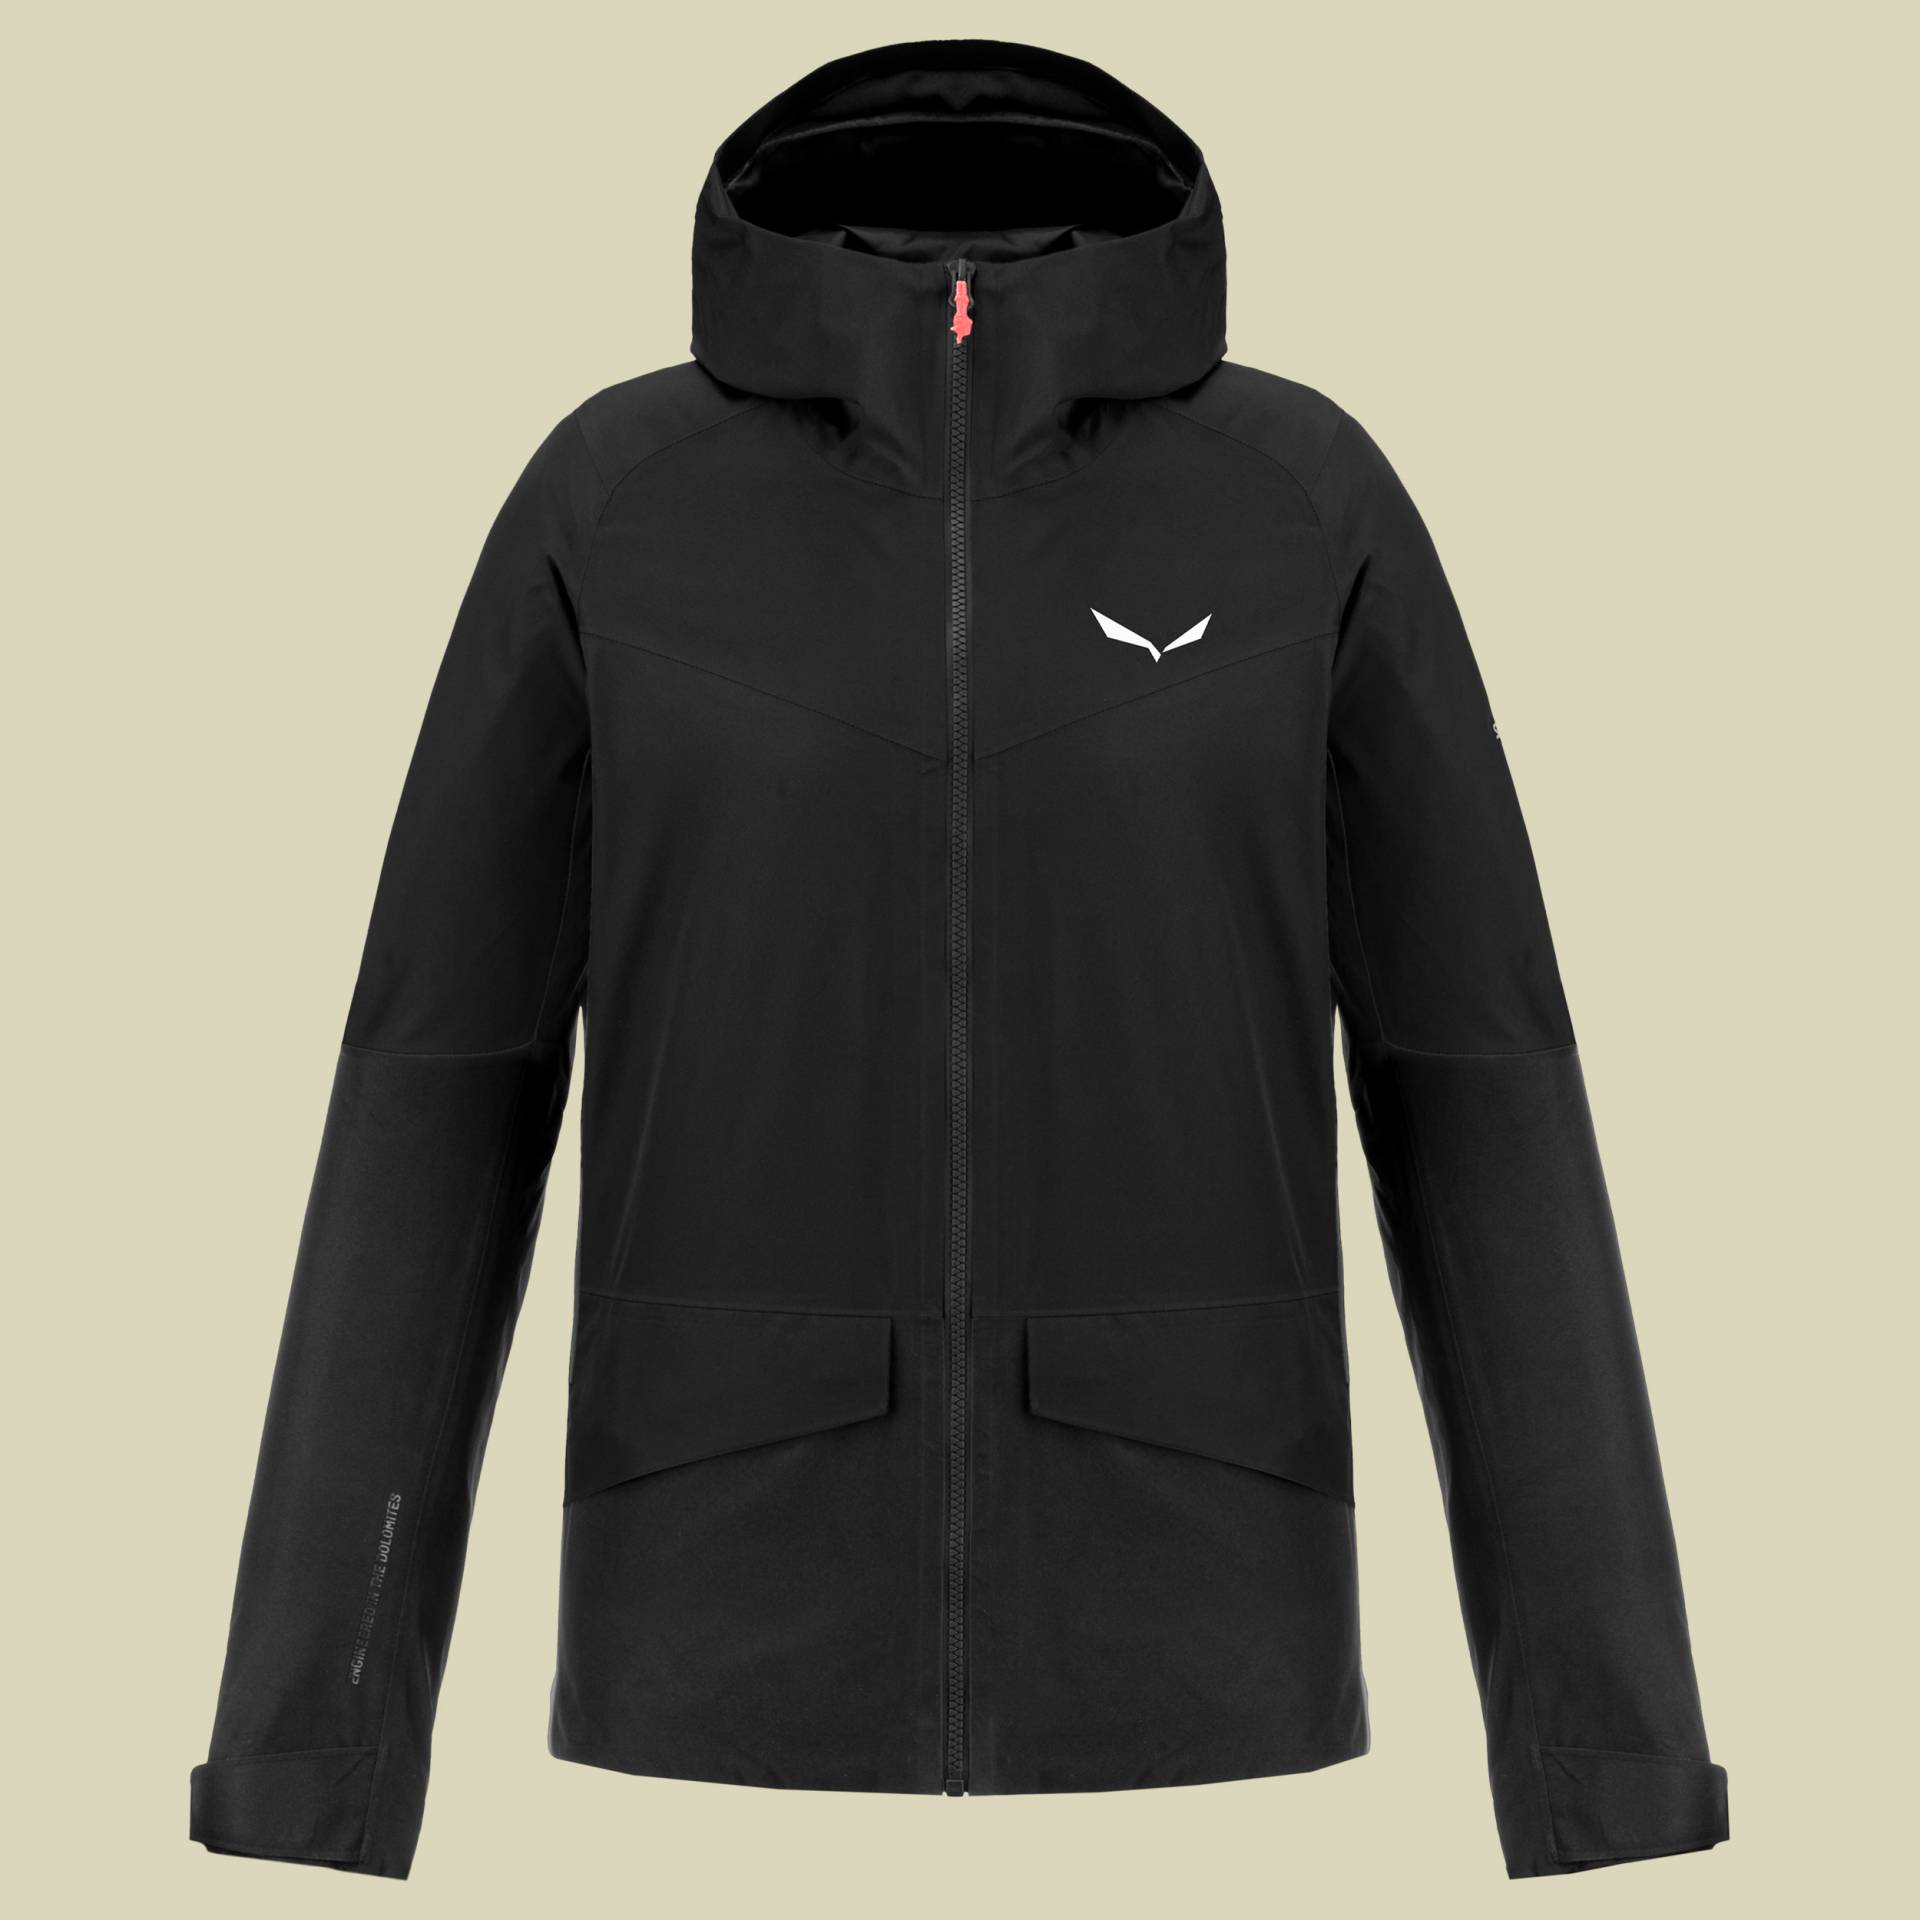 Puez GTX 2L Jacket Women Größe 36 Farbe black out von Salewa